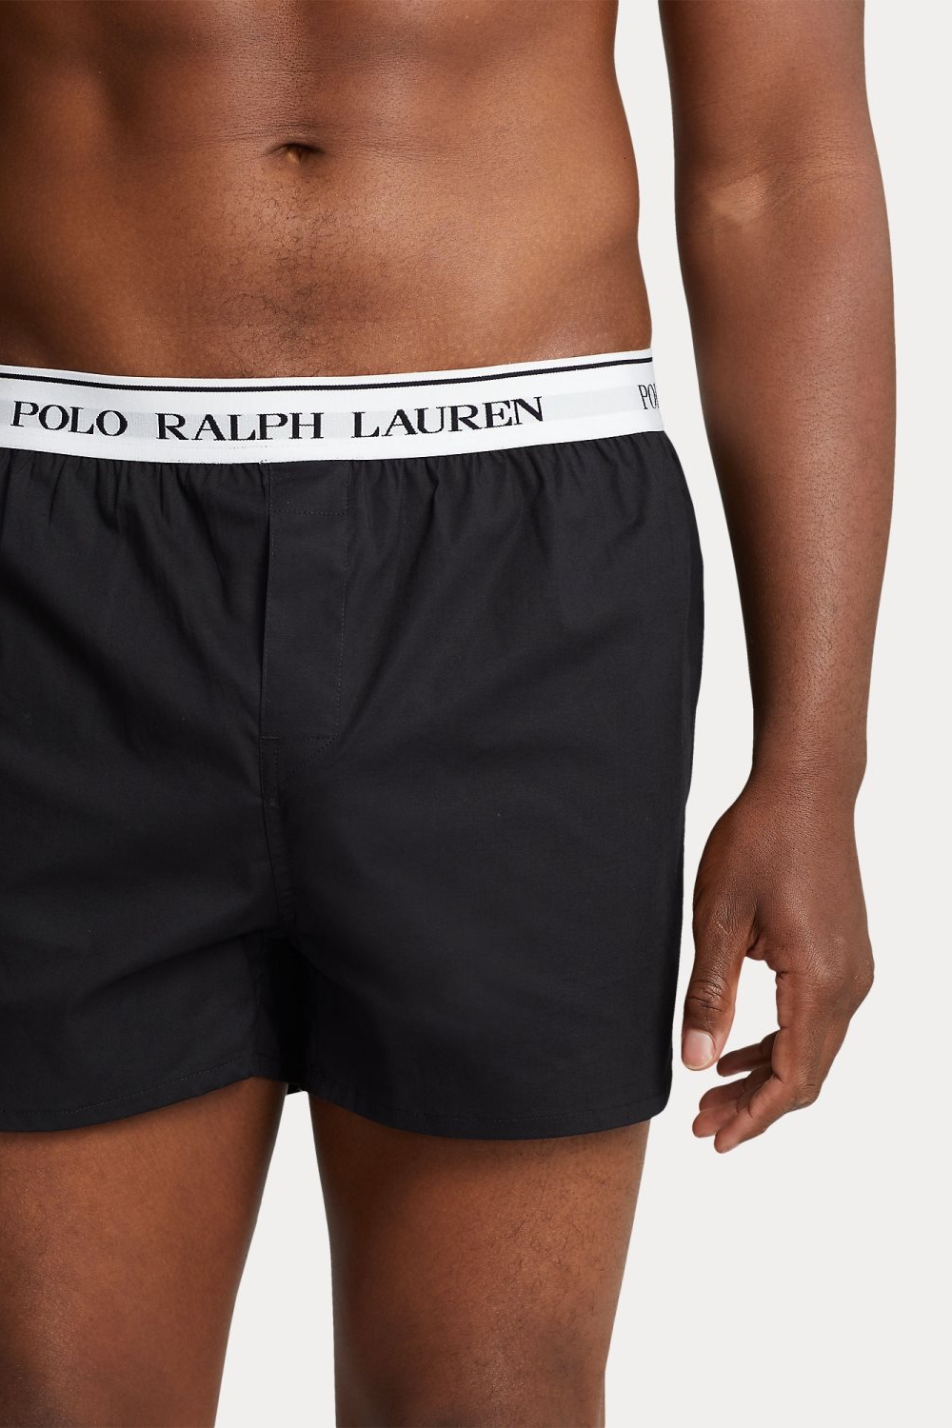 Polo Ralph Lauren 3 Pack Elastic Men's Boxer